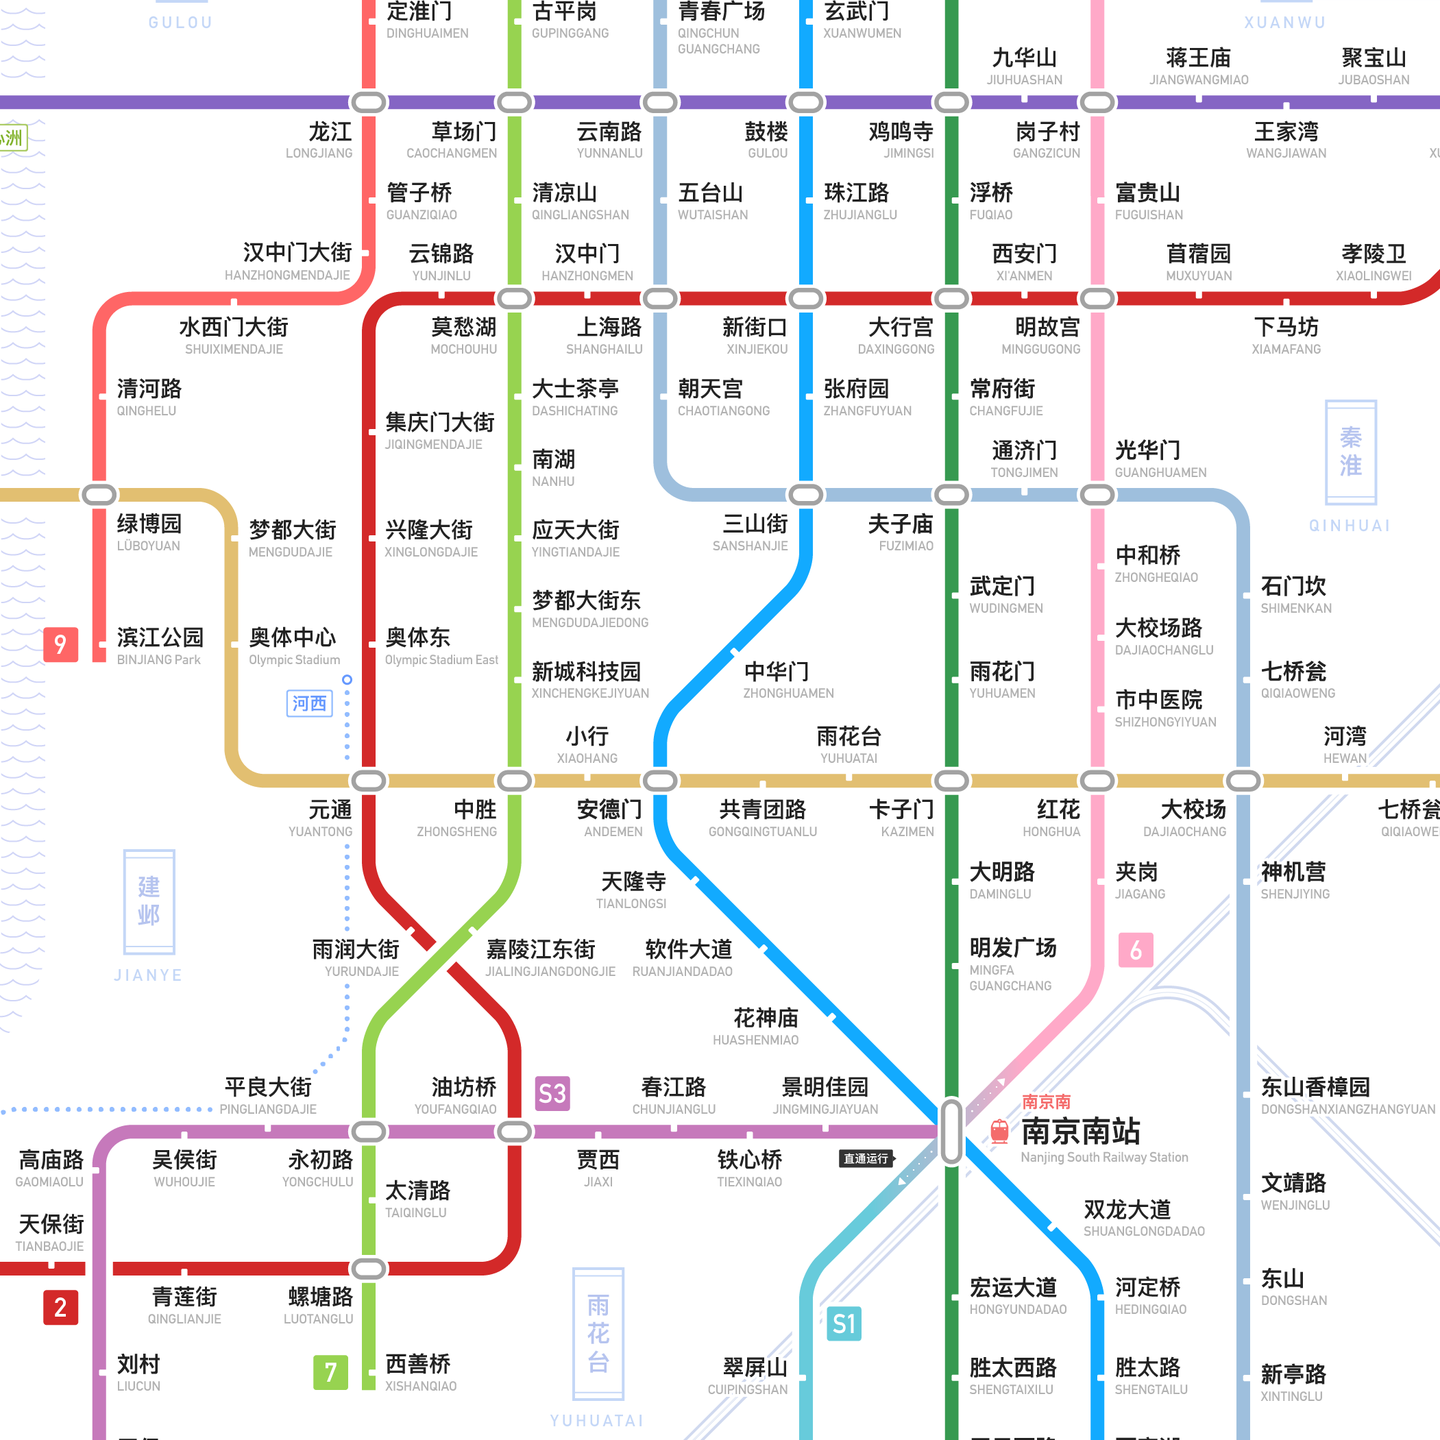 南京轨道交通图 2020 / 2025